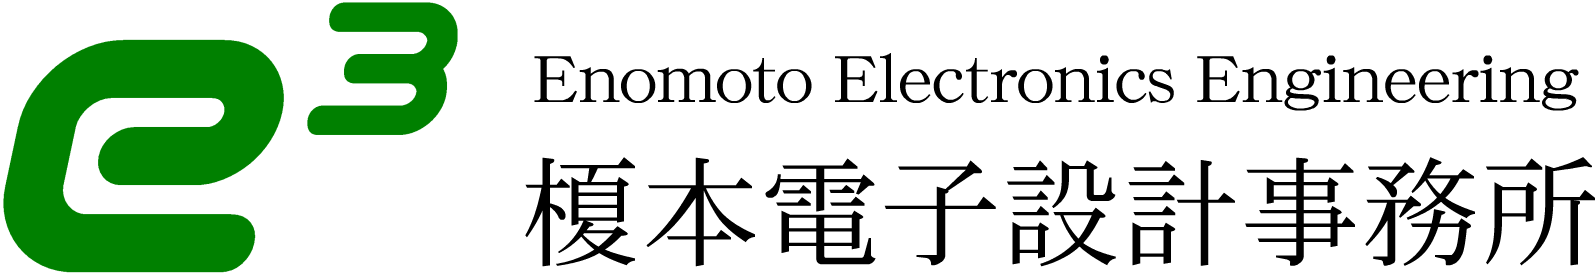 榎本電子設計事務所のロゴ